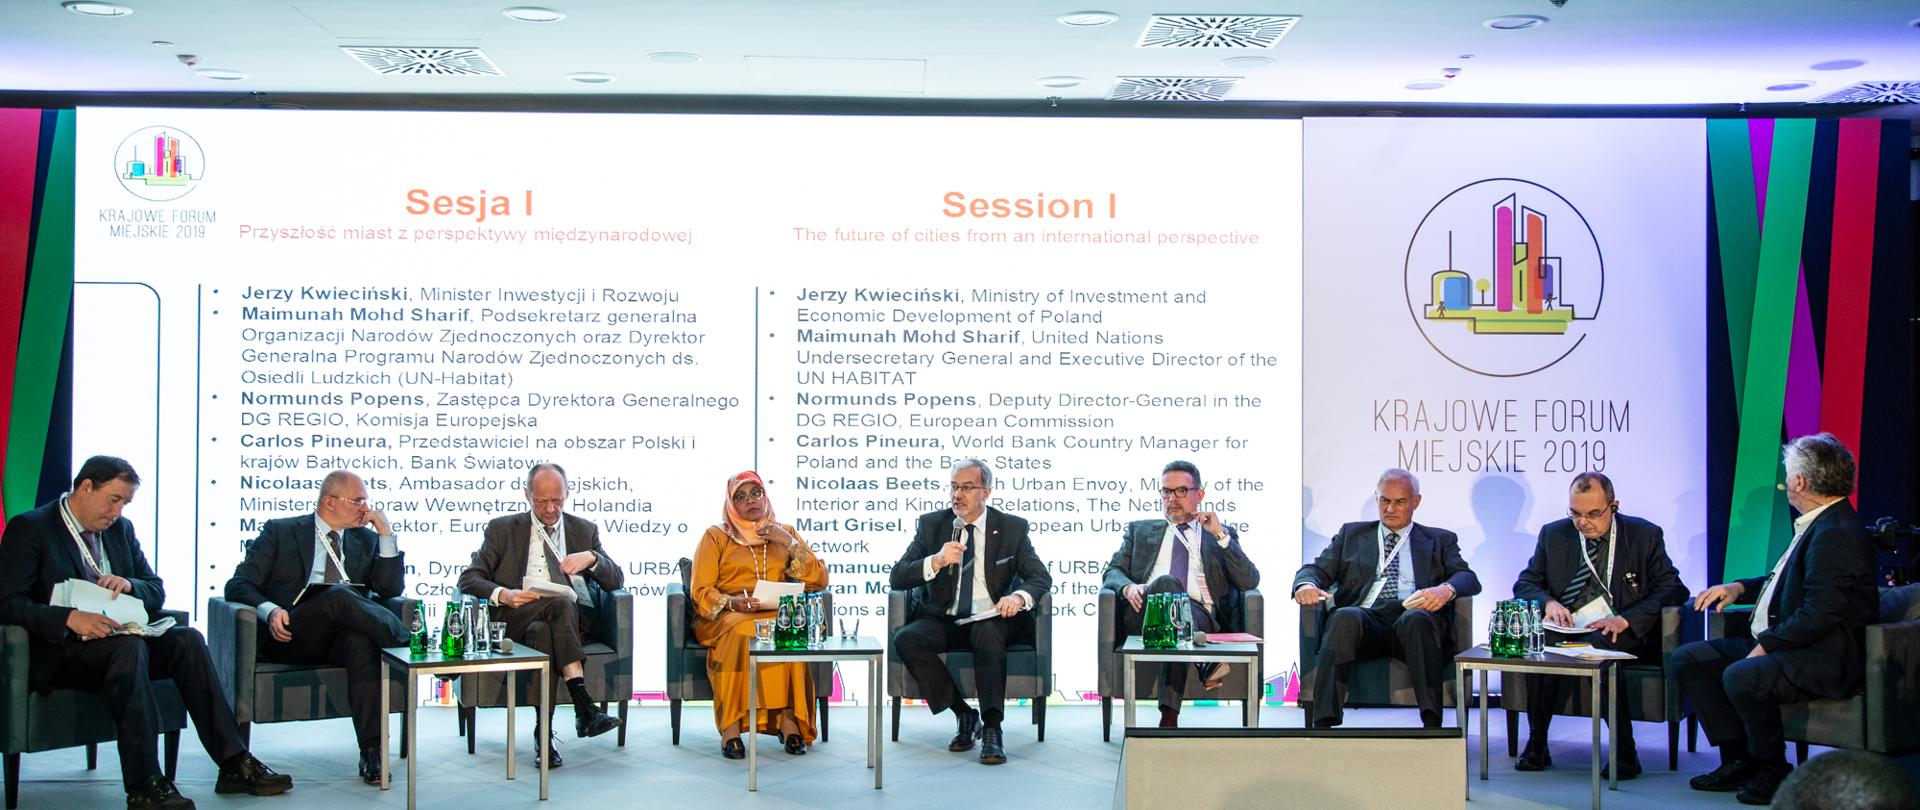 Krajowe Forum Miejskie 2019_panel dyskusyjny